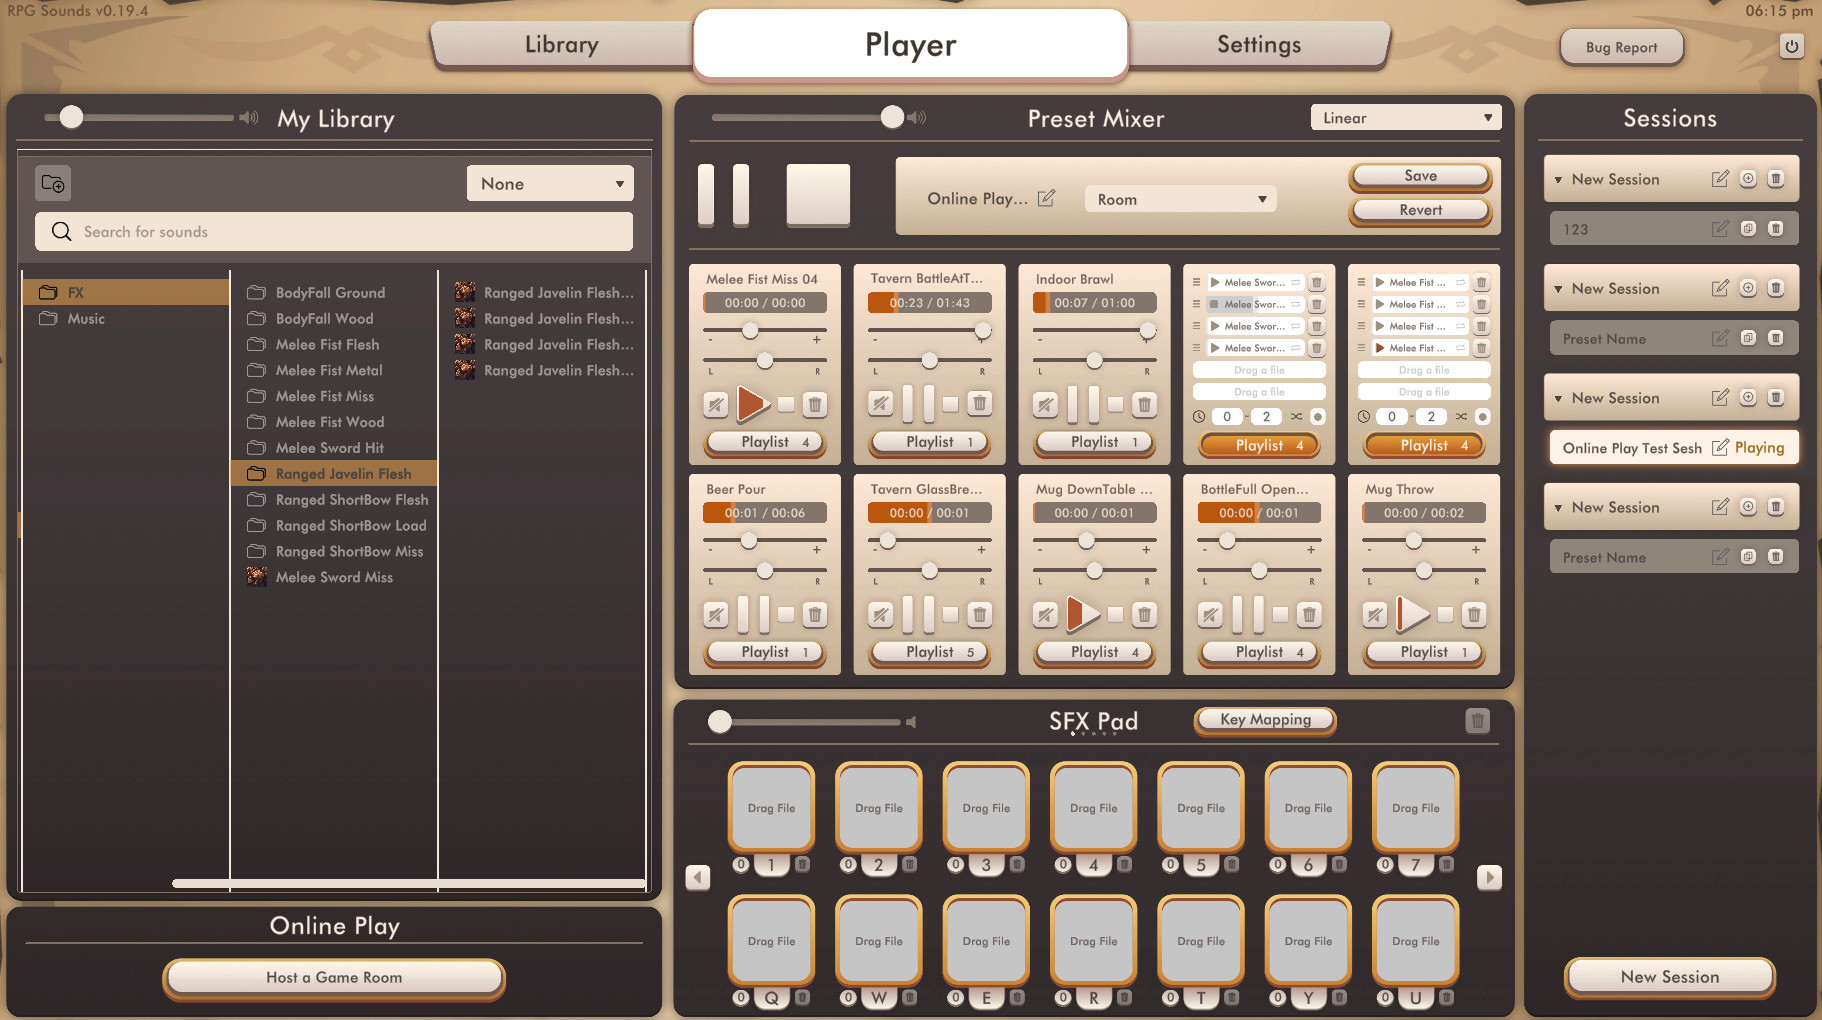 RPG Sounds - Kobolds - Sound Pack screenshot